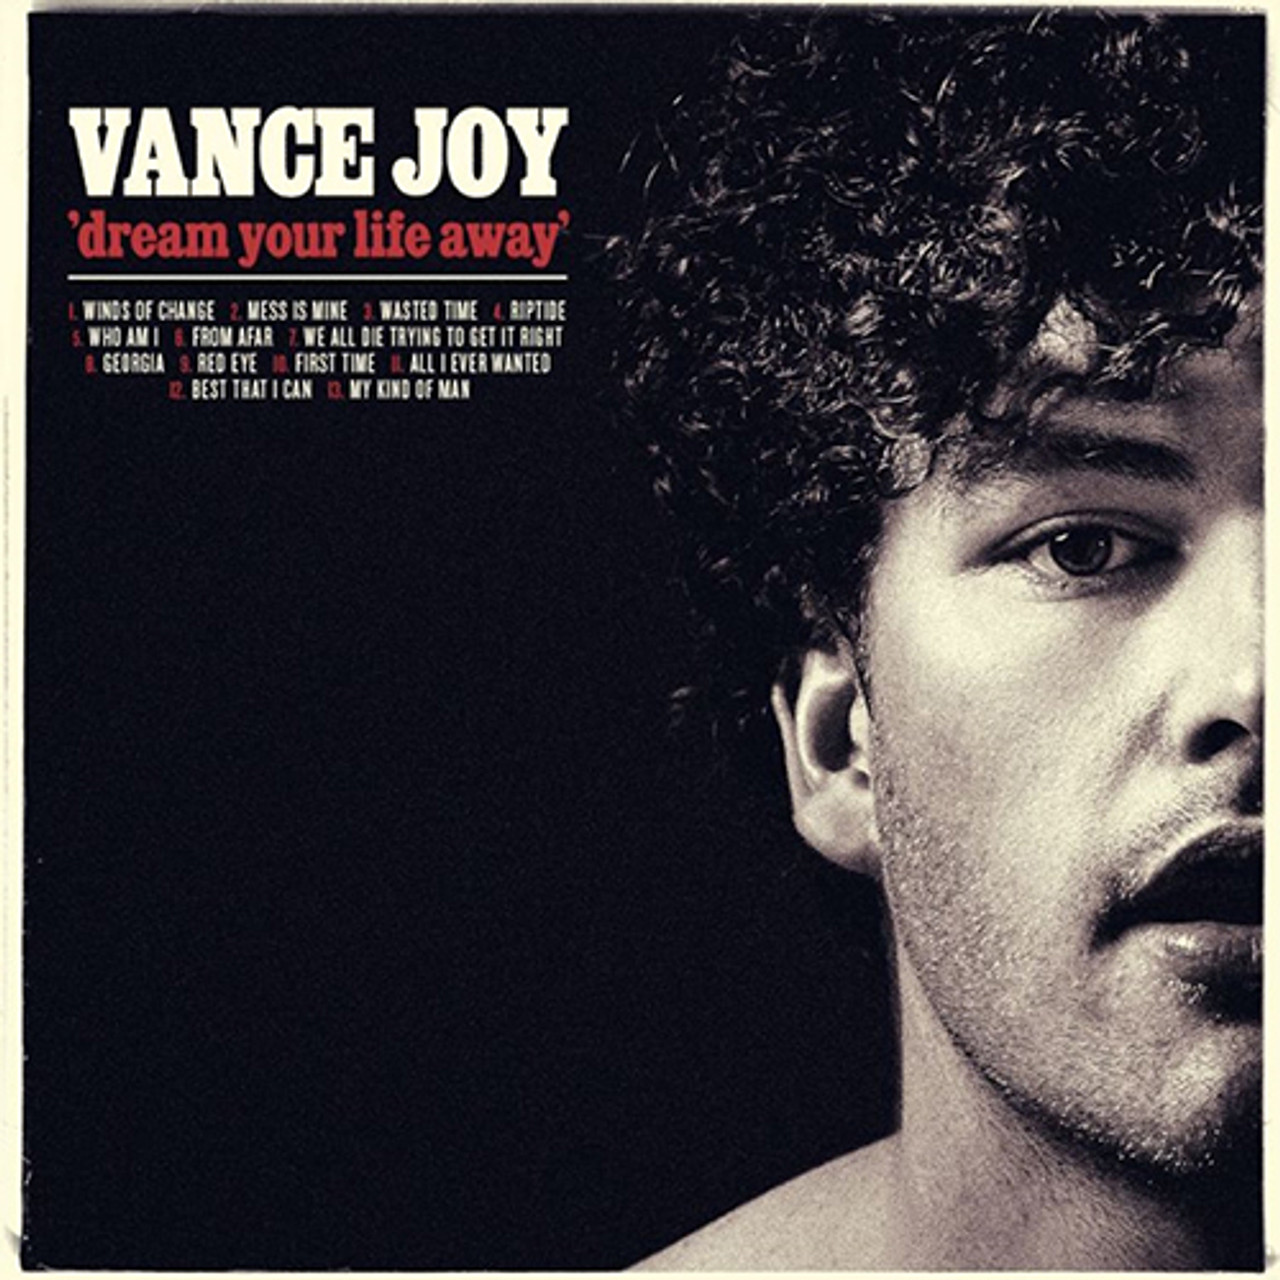 Vance Joy - Dream Your Life Away (Vinyl LP)